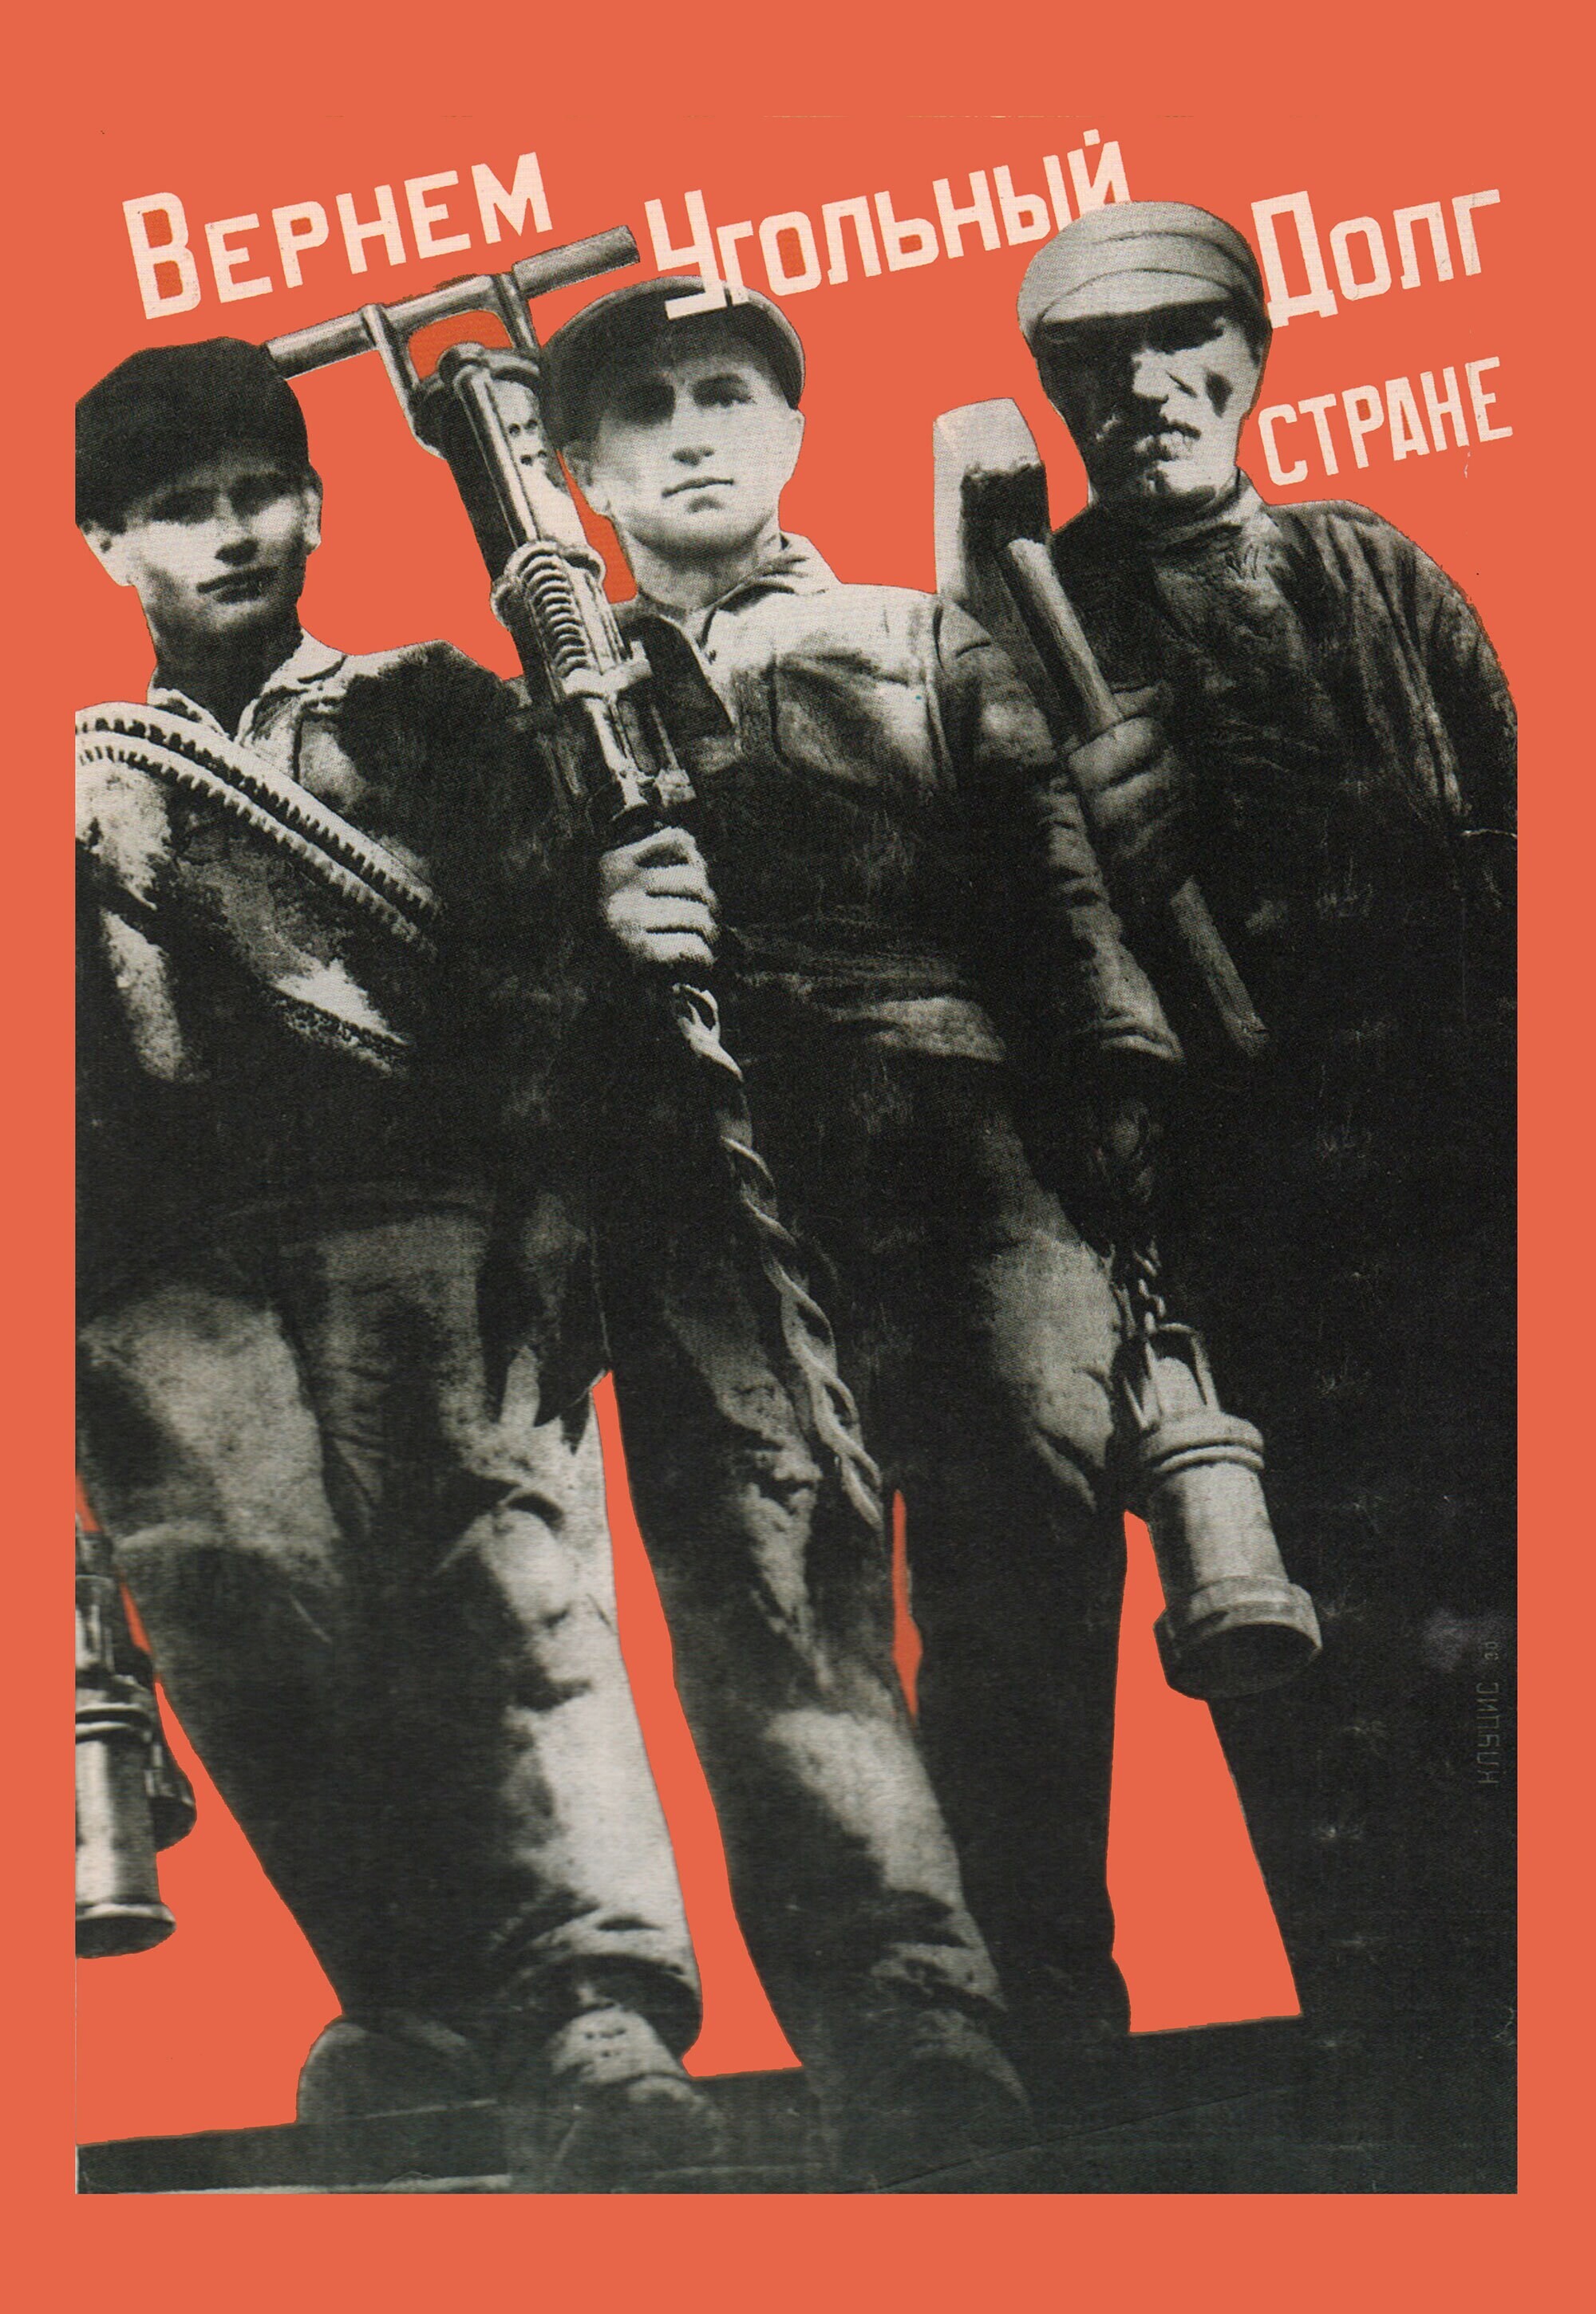 Верный угольный долг стране, 1930 год, плакат, автор Густав Клуцис (авангардное советское искусство, 1920-е)